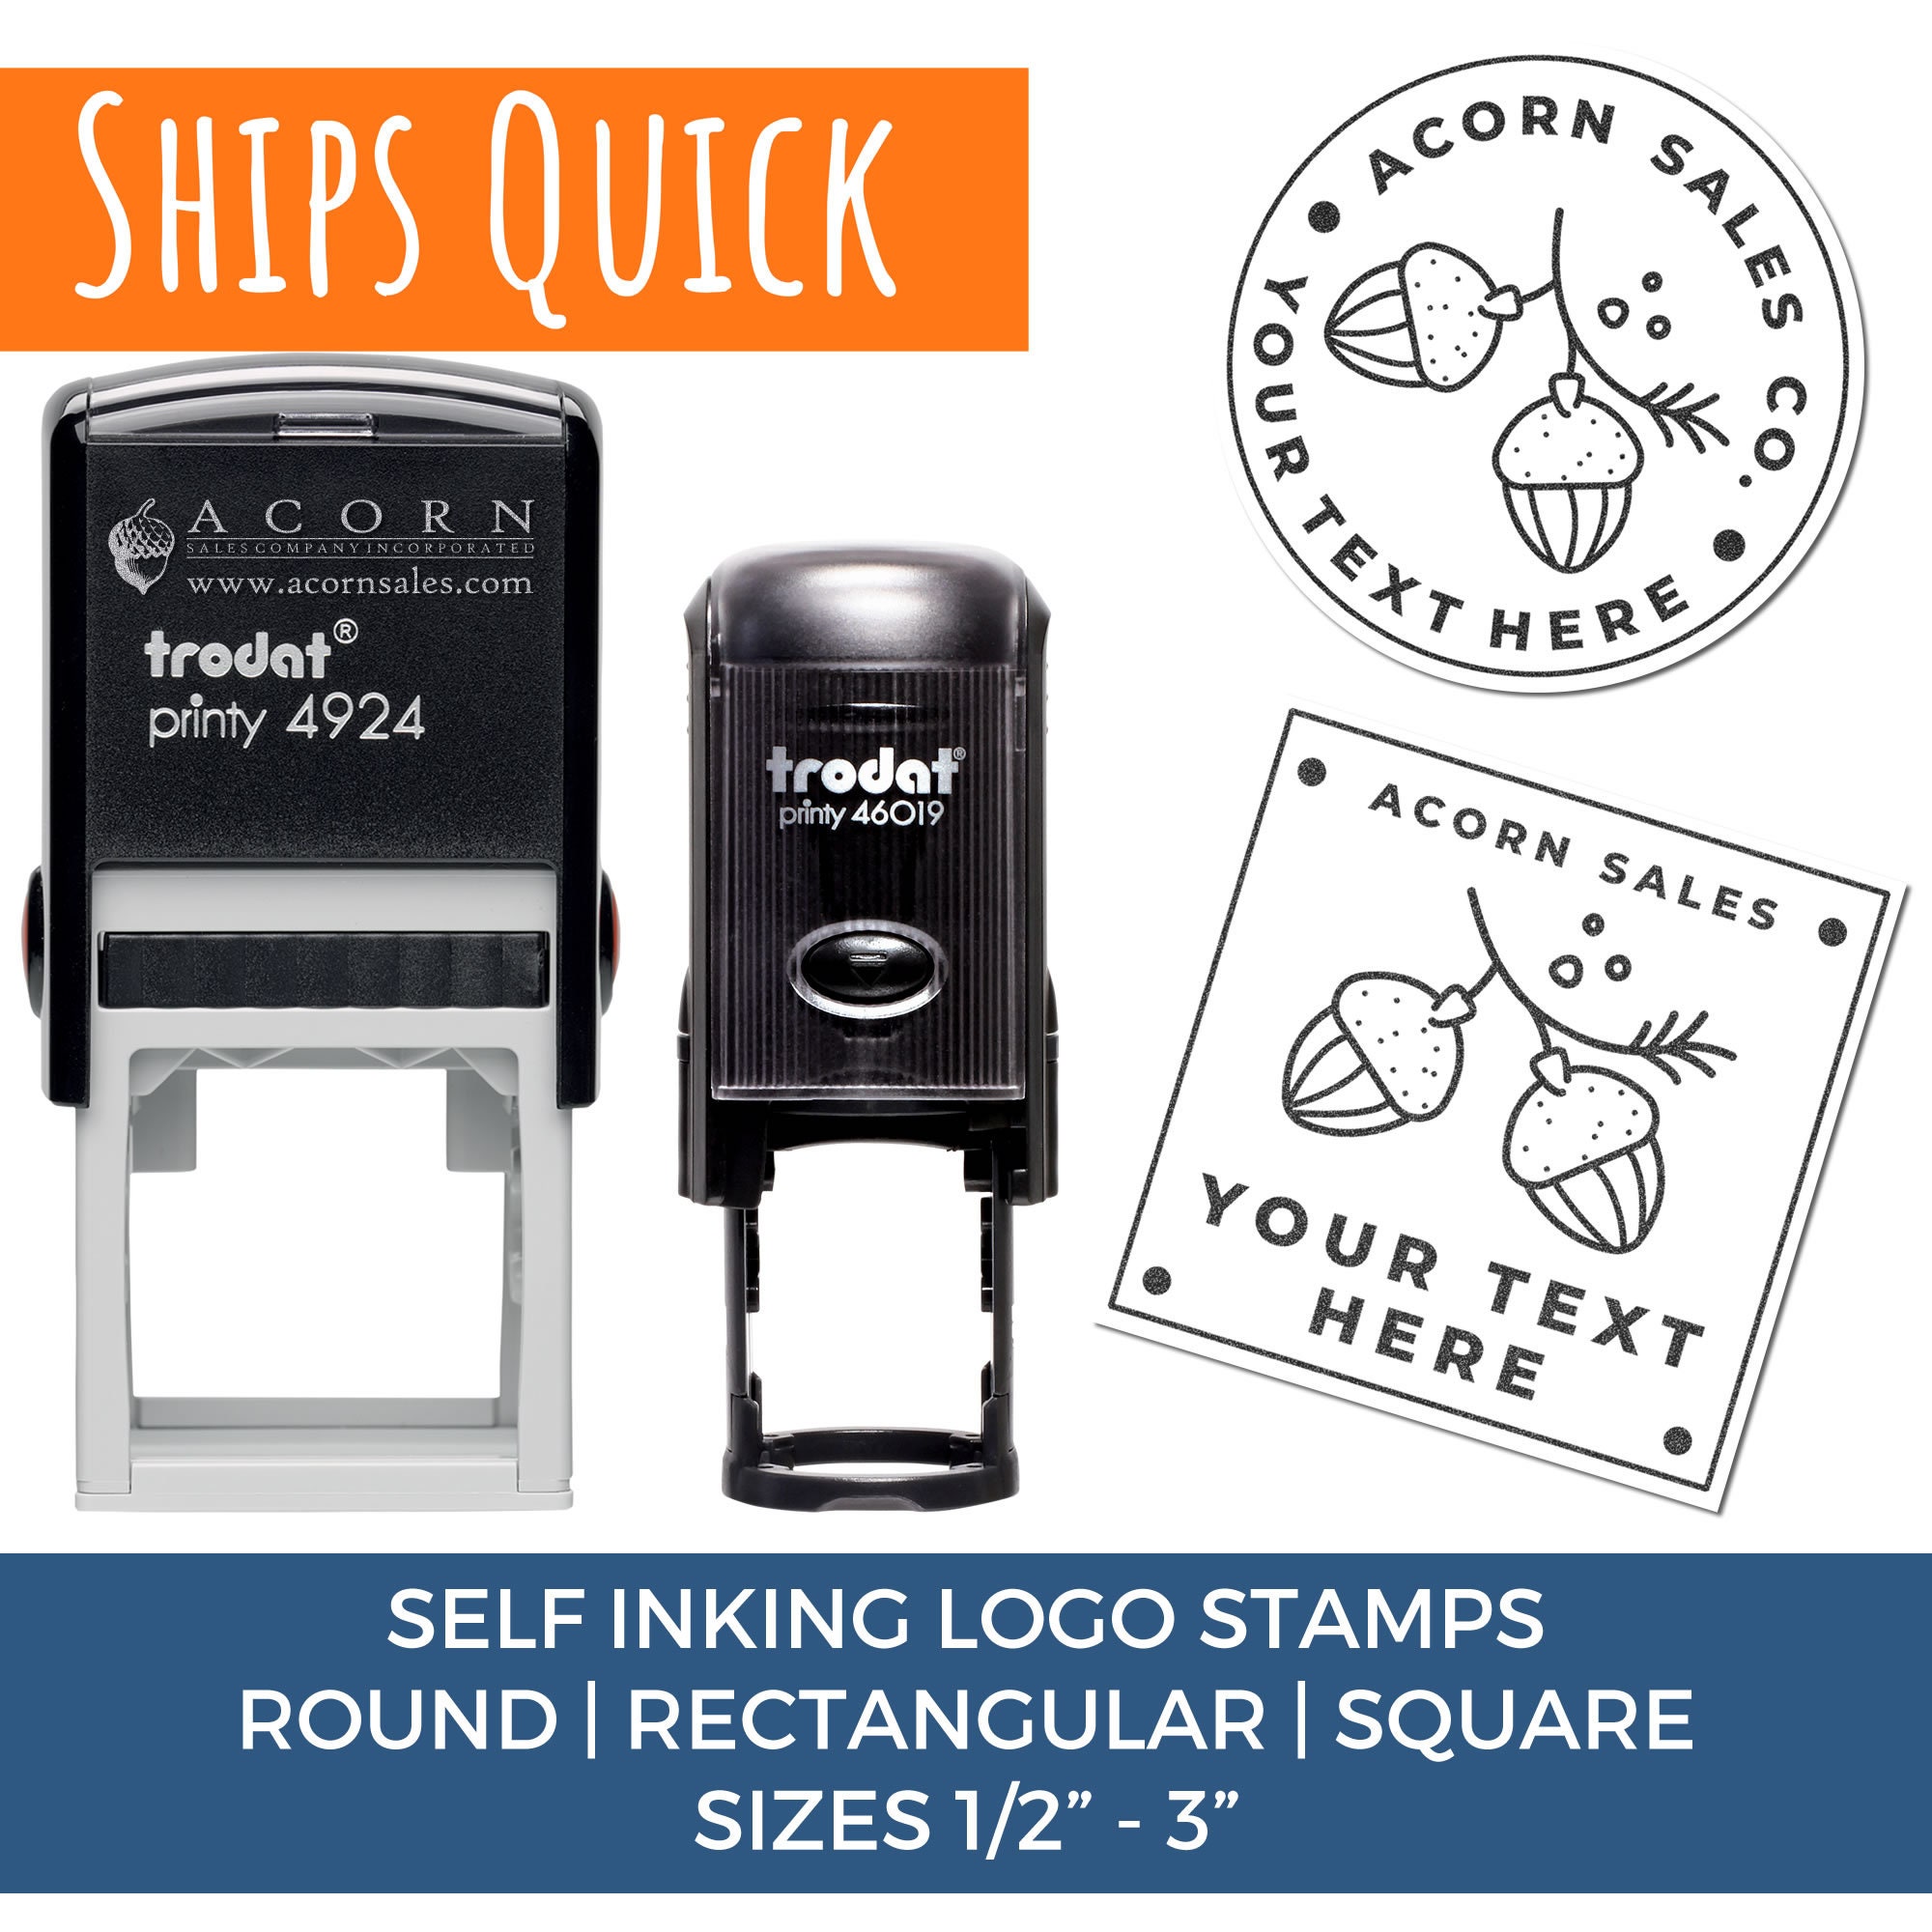 Custom Rubber Stamp - Logo Stamp - Business Branding - Return